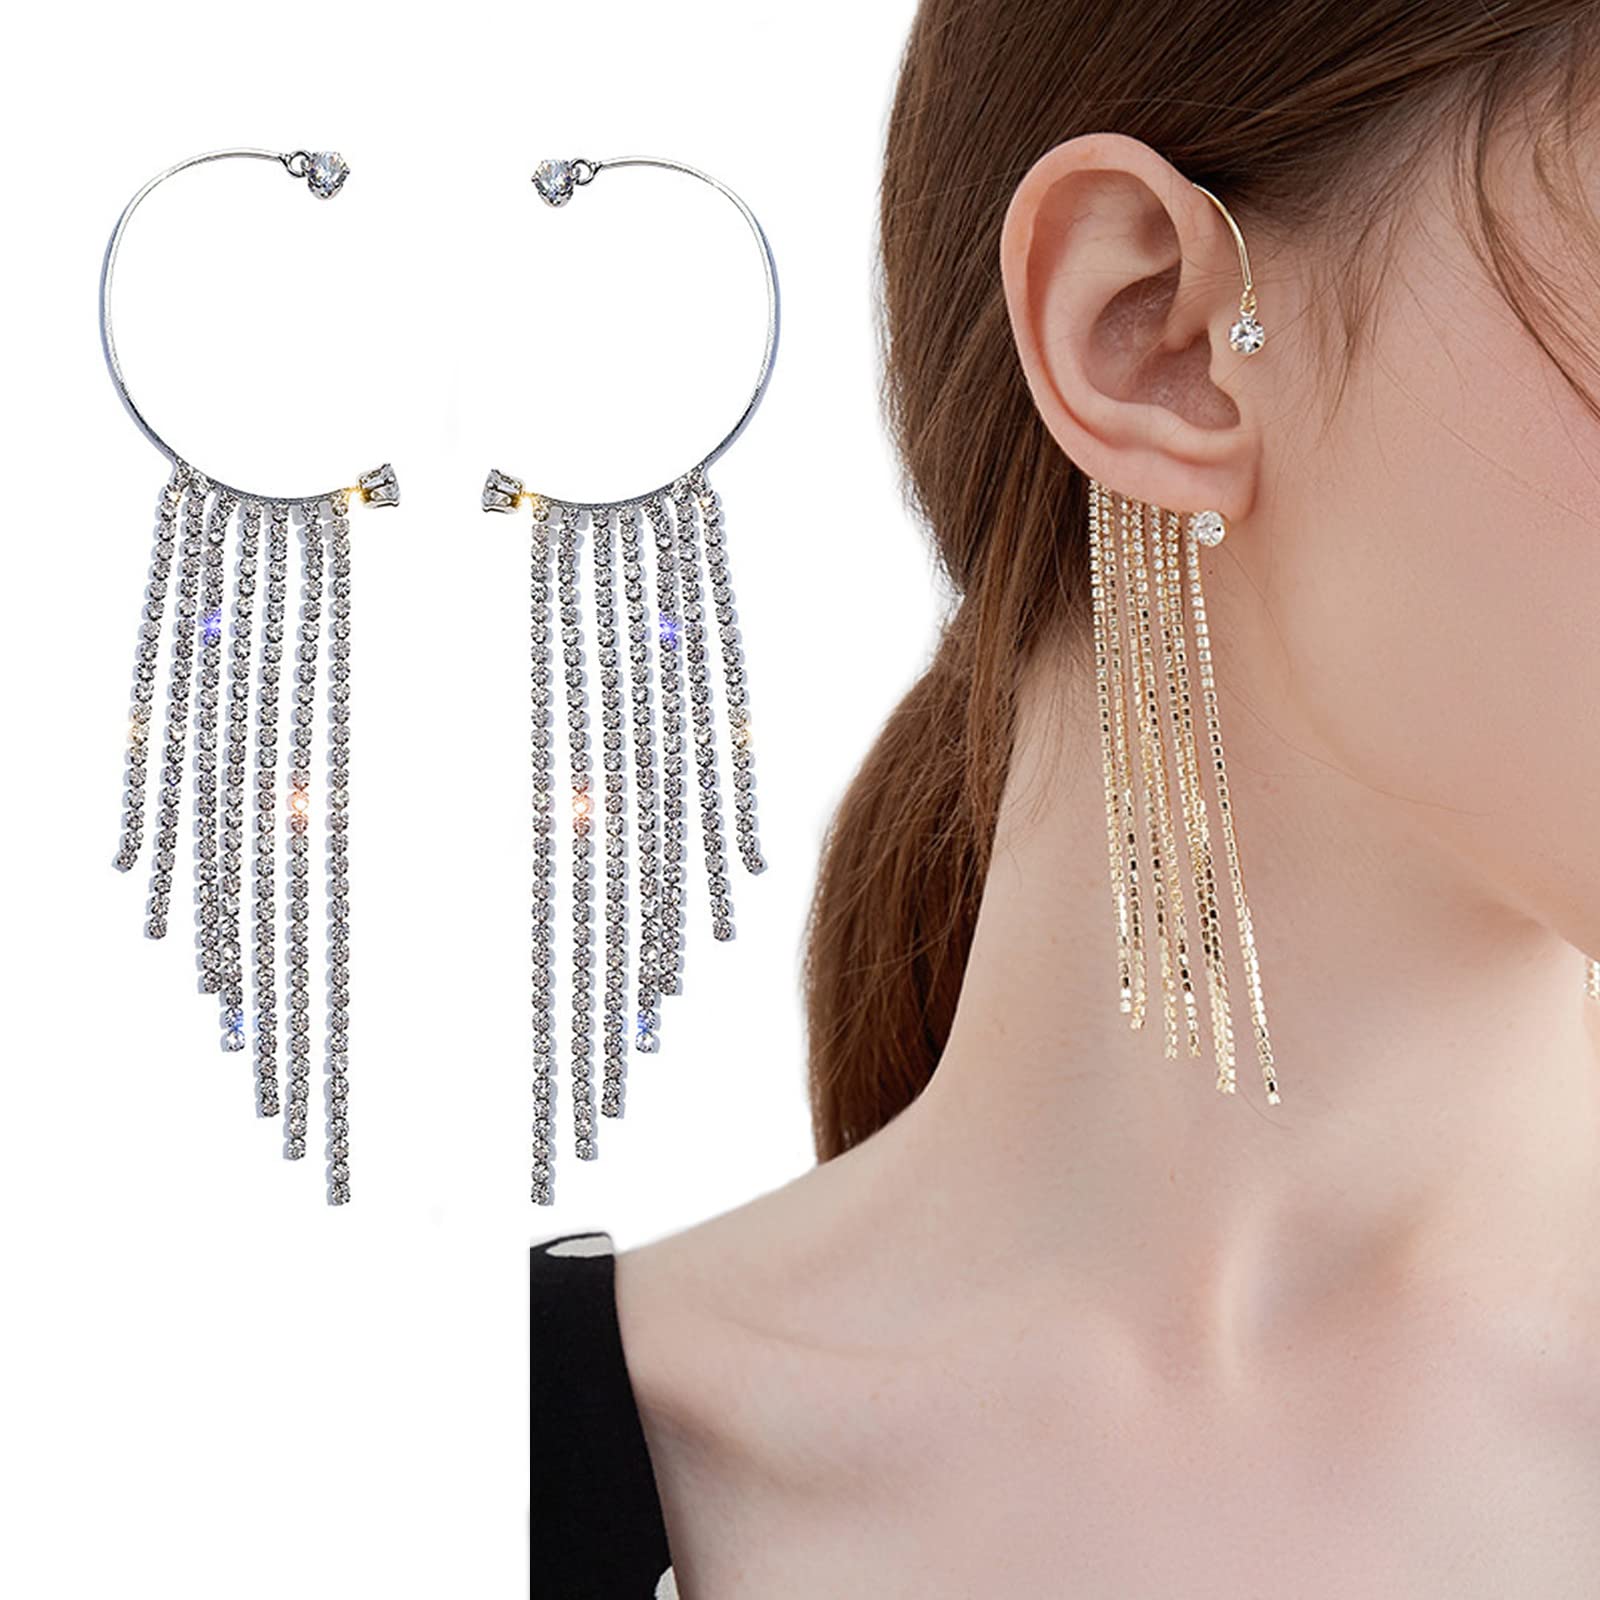 The New Earring Trend Every Fashion Girl Will Be Wearing | Earring trends,  Types of ear piercings, Ear piercings